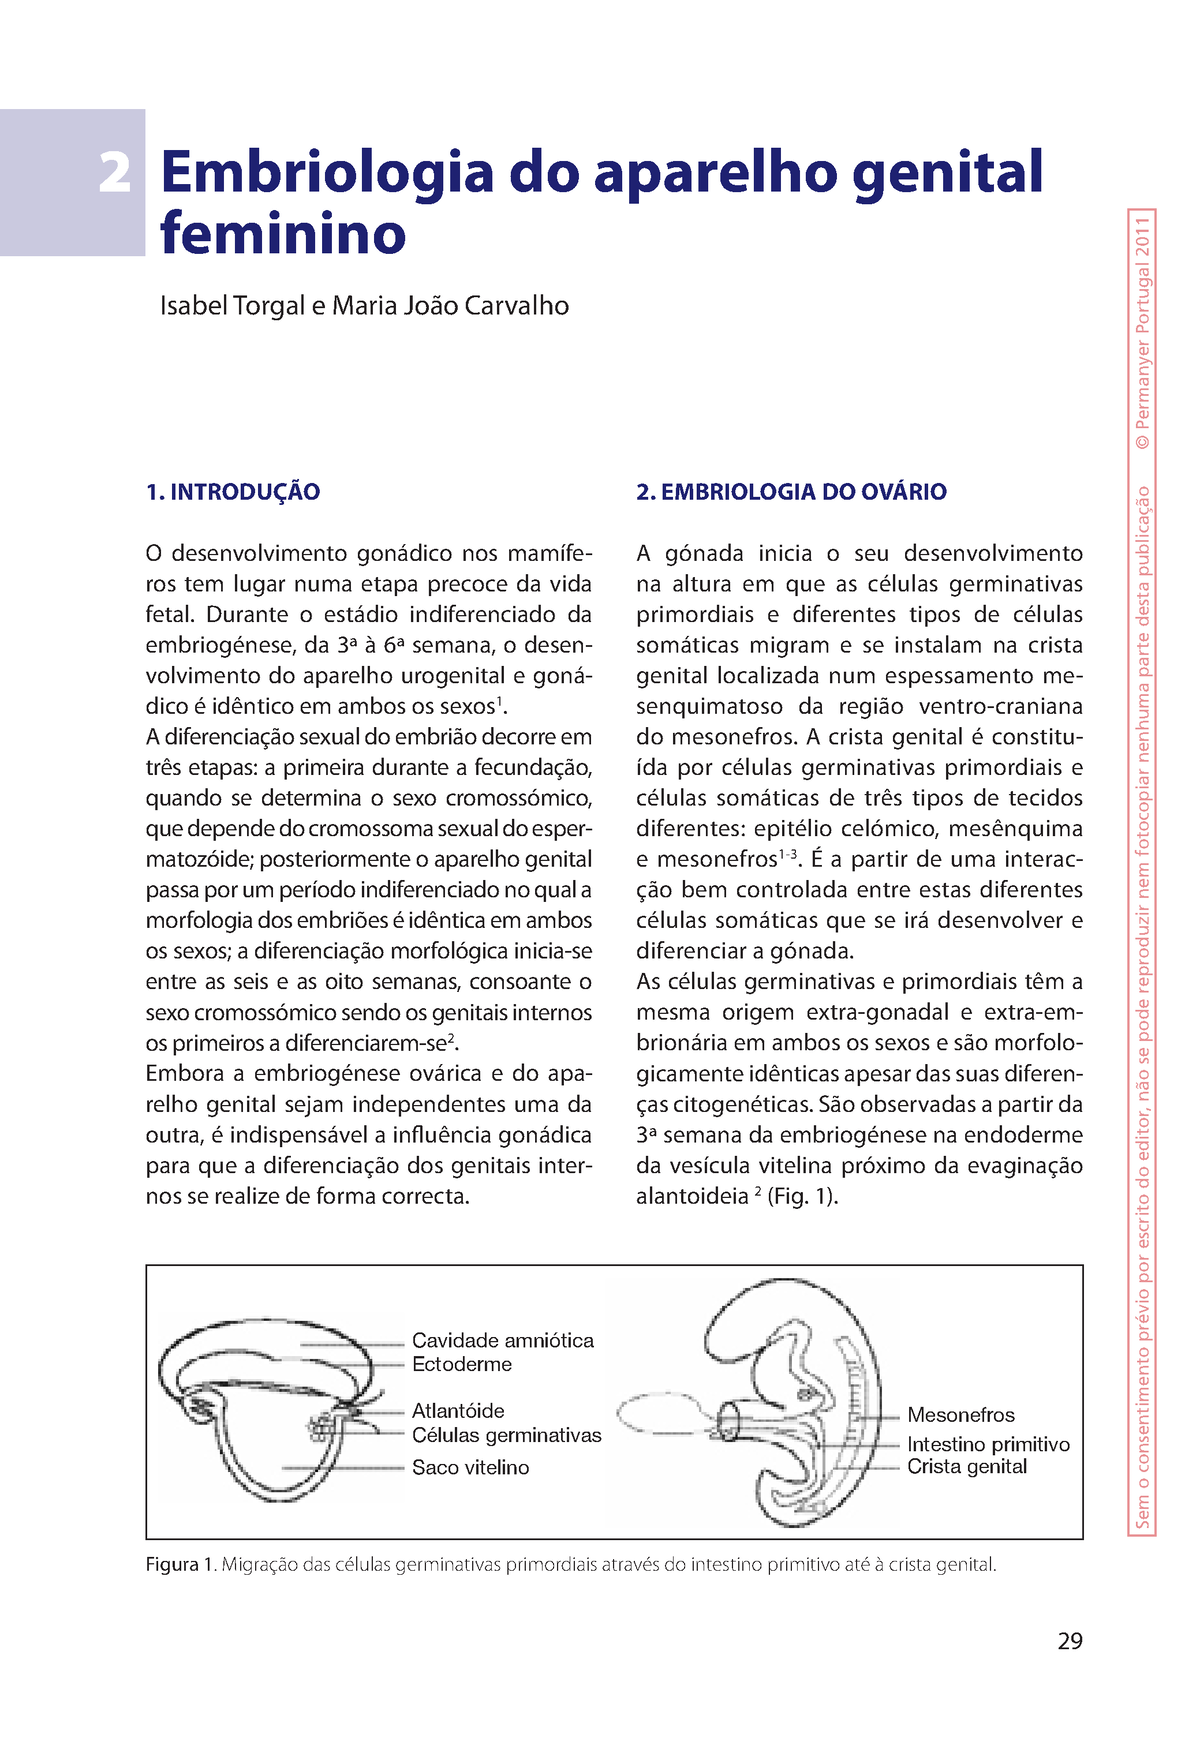 Embriologia Aparelho Genital Feminino Embriologia Do Aparelho Genital Feminino Isabel Torgal E 4680